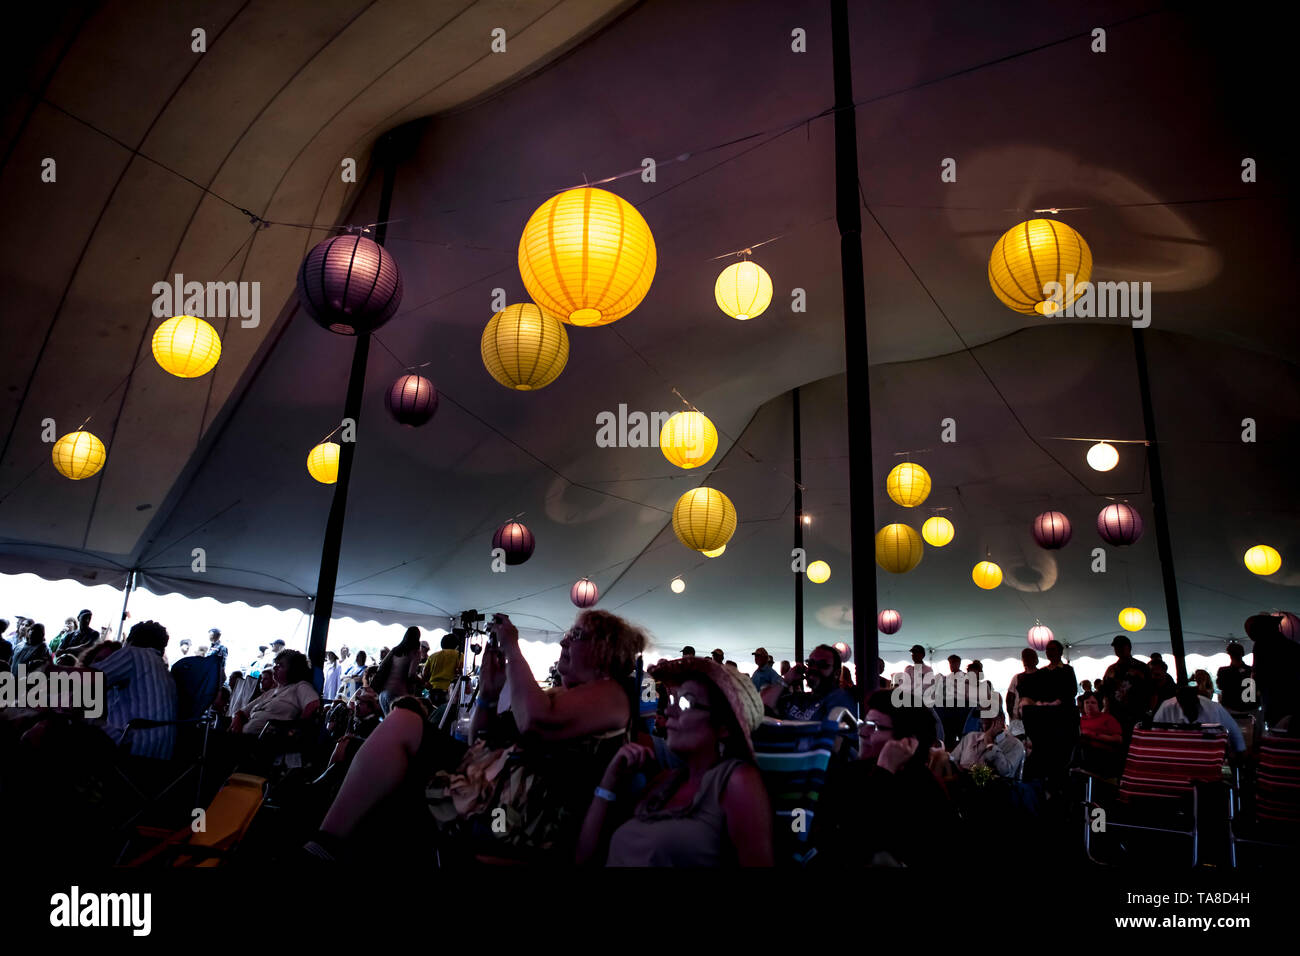 Le luci del globo sotto la tenda con il pubblico al Festival di Musica, ritmo e Roots Festival di musica, Rhode Island, STATI UNITI D'AMERICA Foto Stock